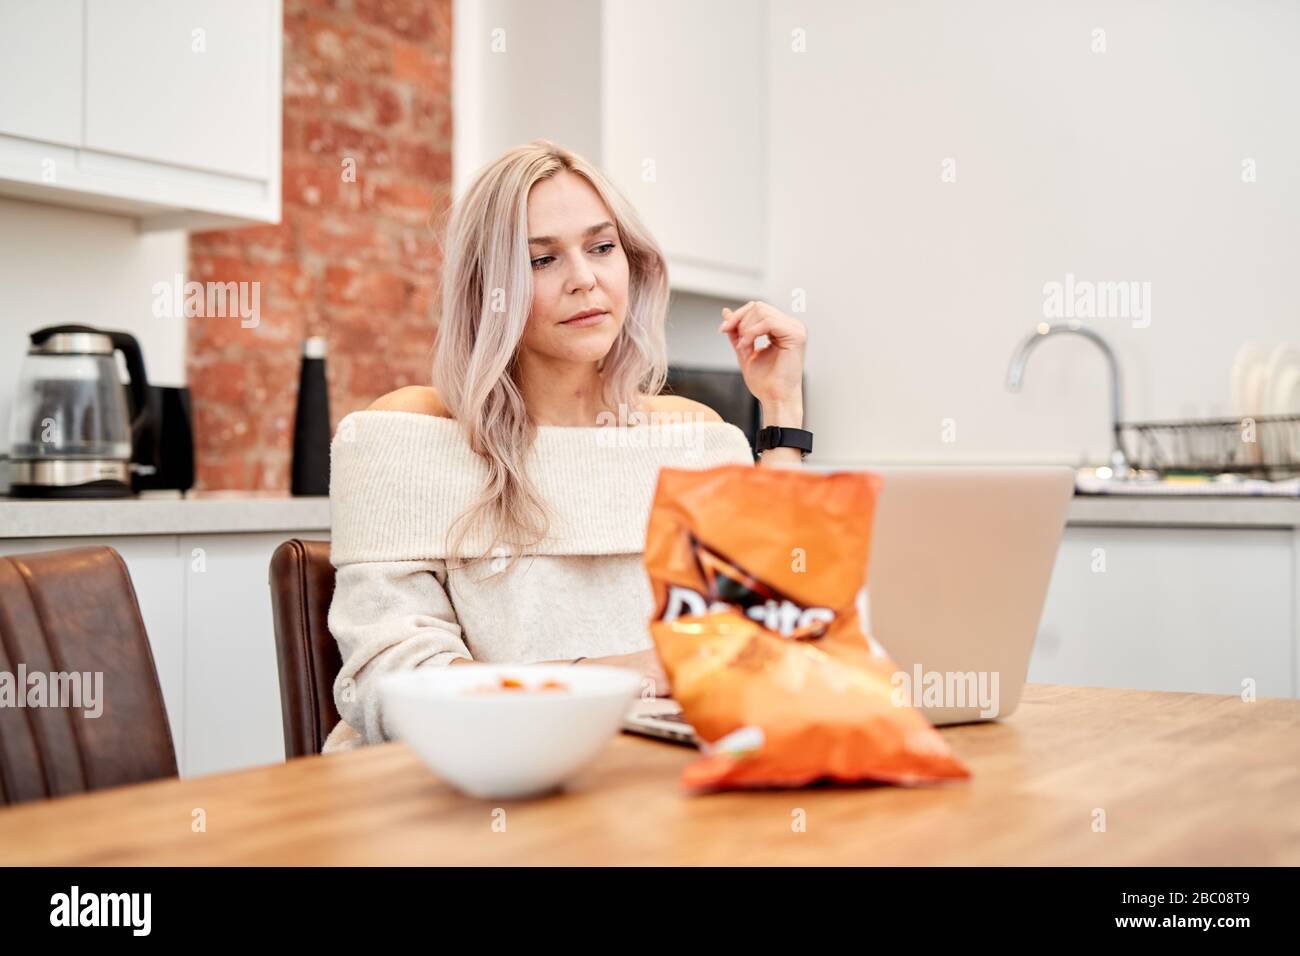 Eine einzelne blonde kaukasische Frau, die an einem Tisch sitzt und einen Laptop mit einer Tüte mit tangarem Käse Doritos daneben betrachtet Stockfoto